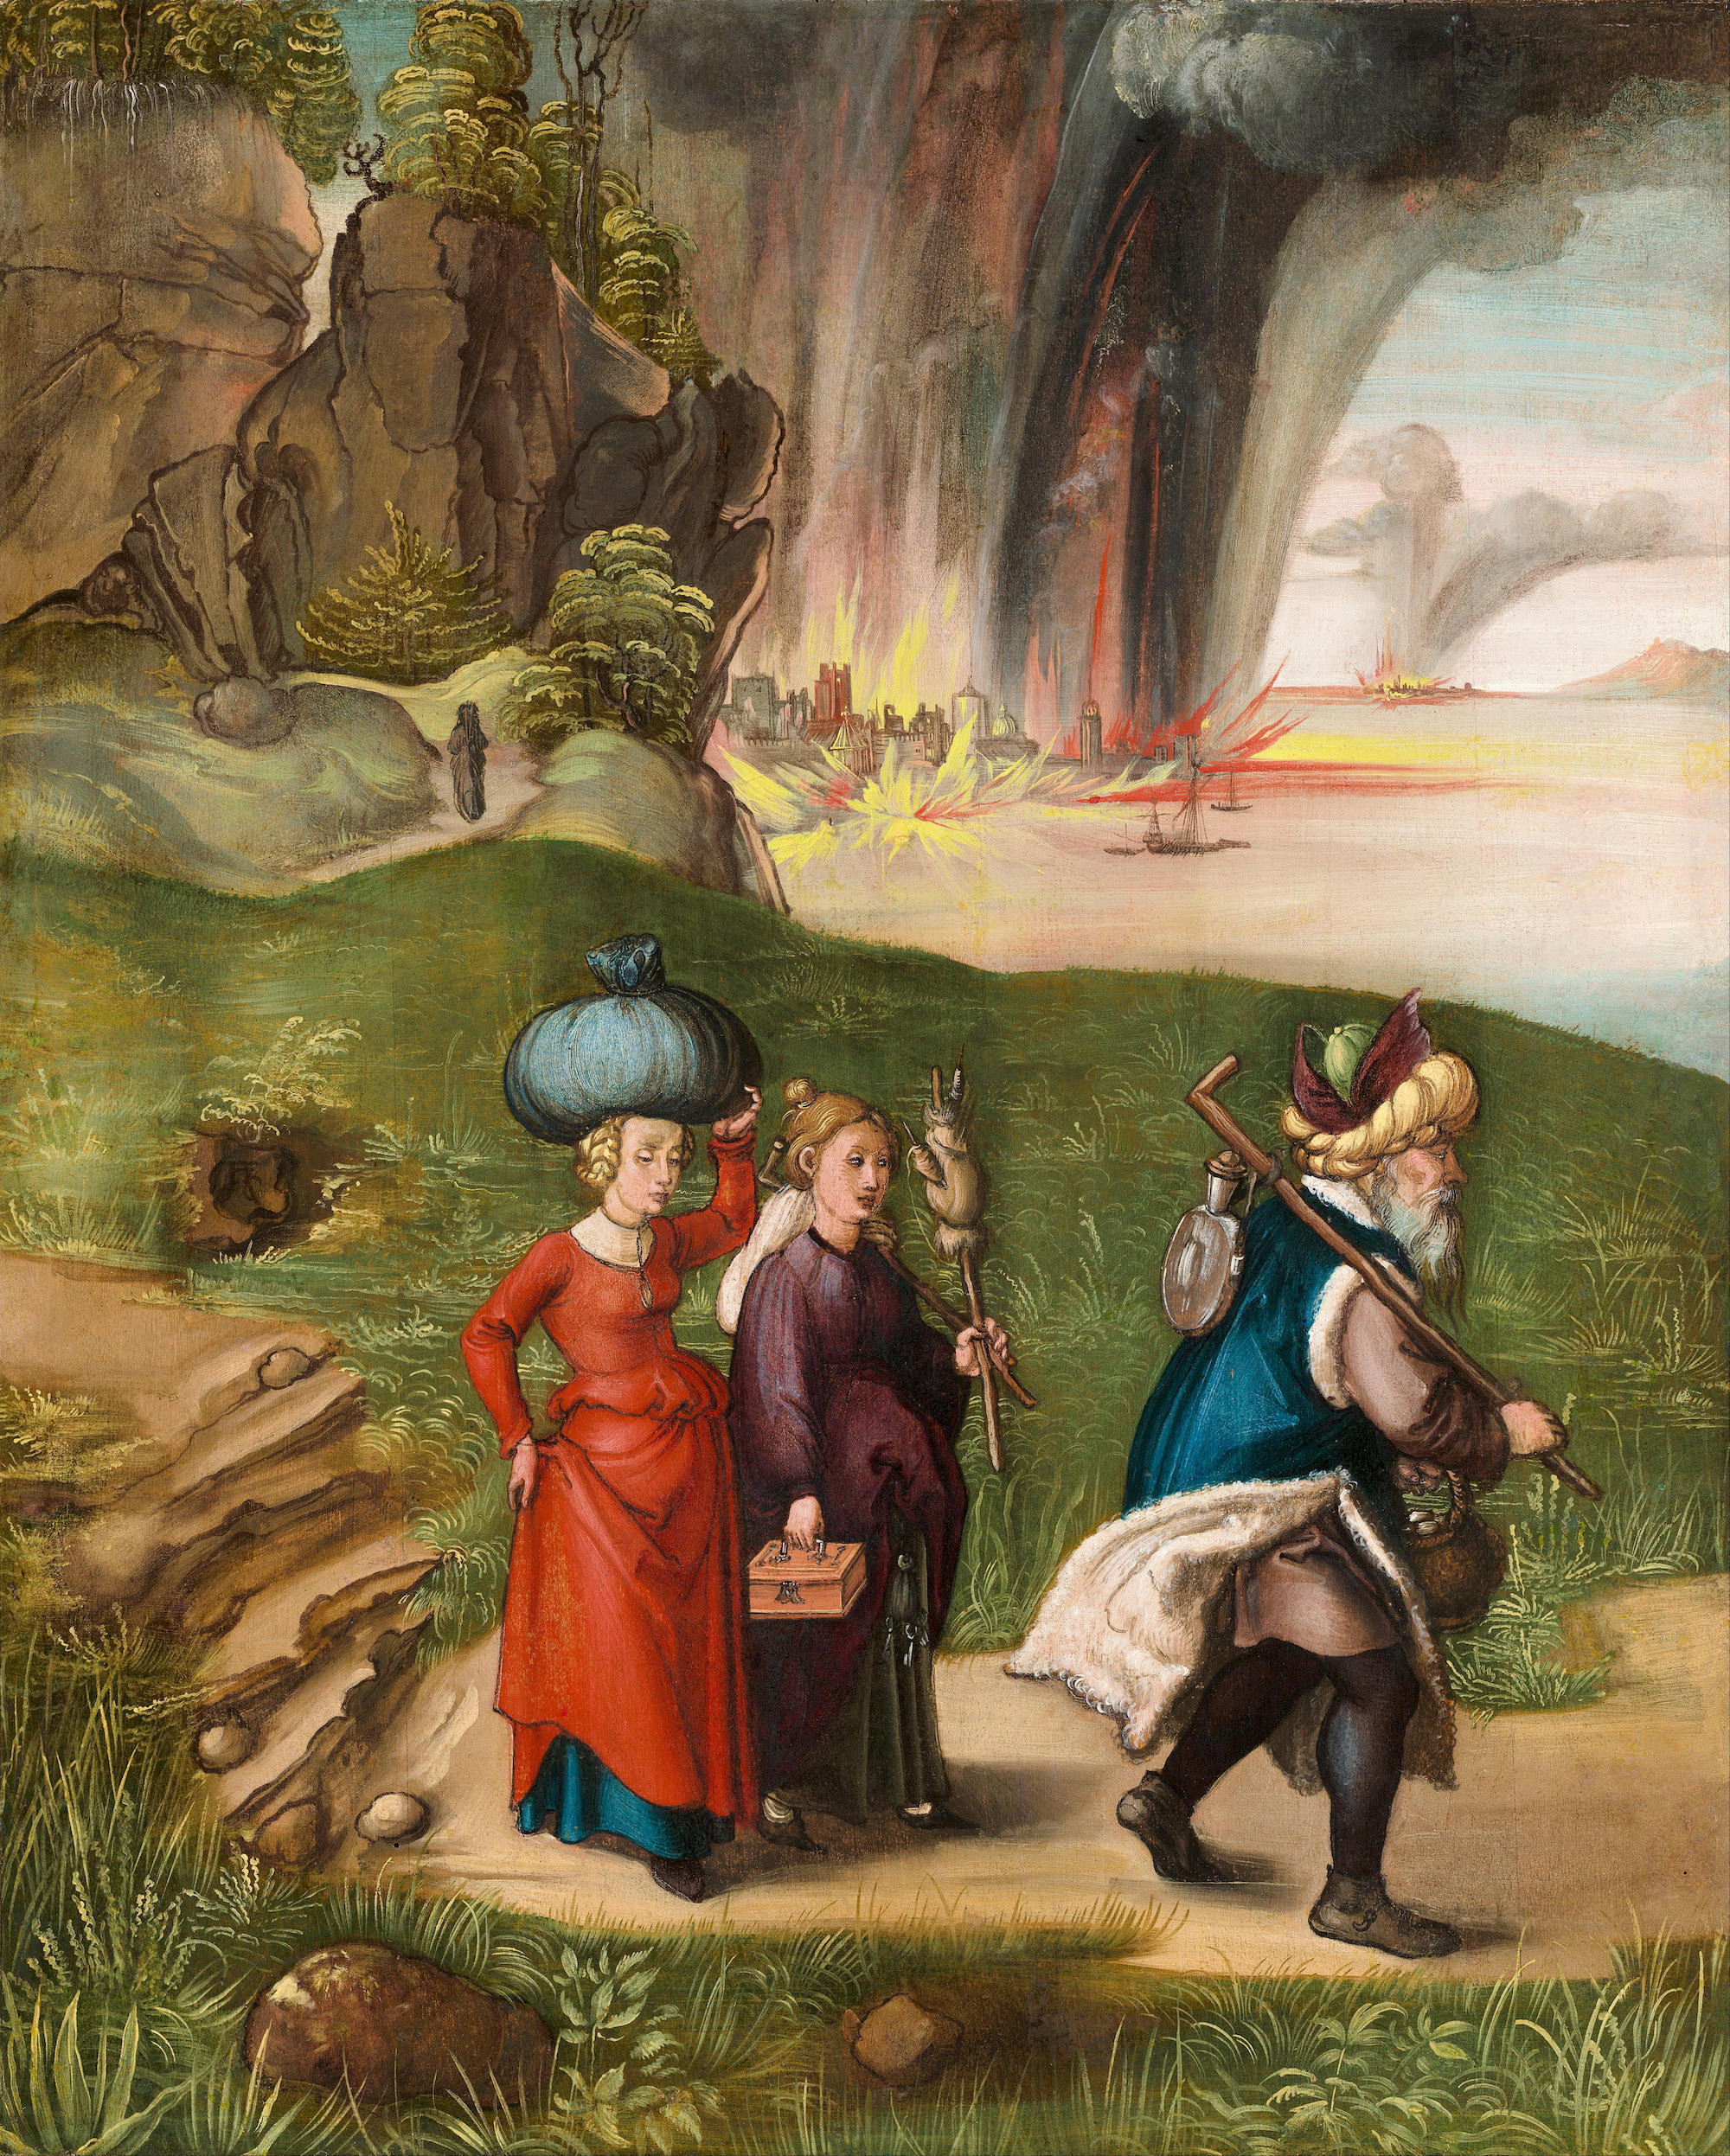 लॉट और उसकी बेटियां [उलटी तरफ] by Albrecht Dürer - १४९६ - १४९९  - २० ५/८ x १६ ५/८ इंच  